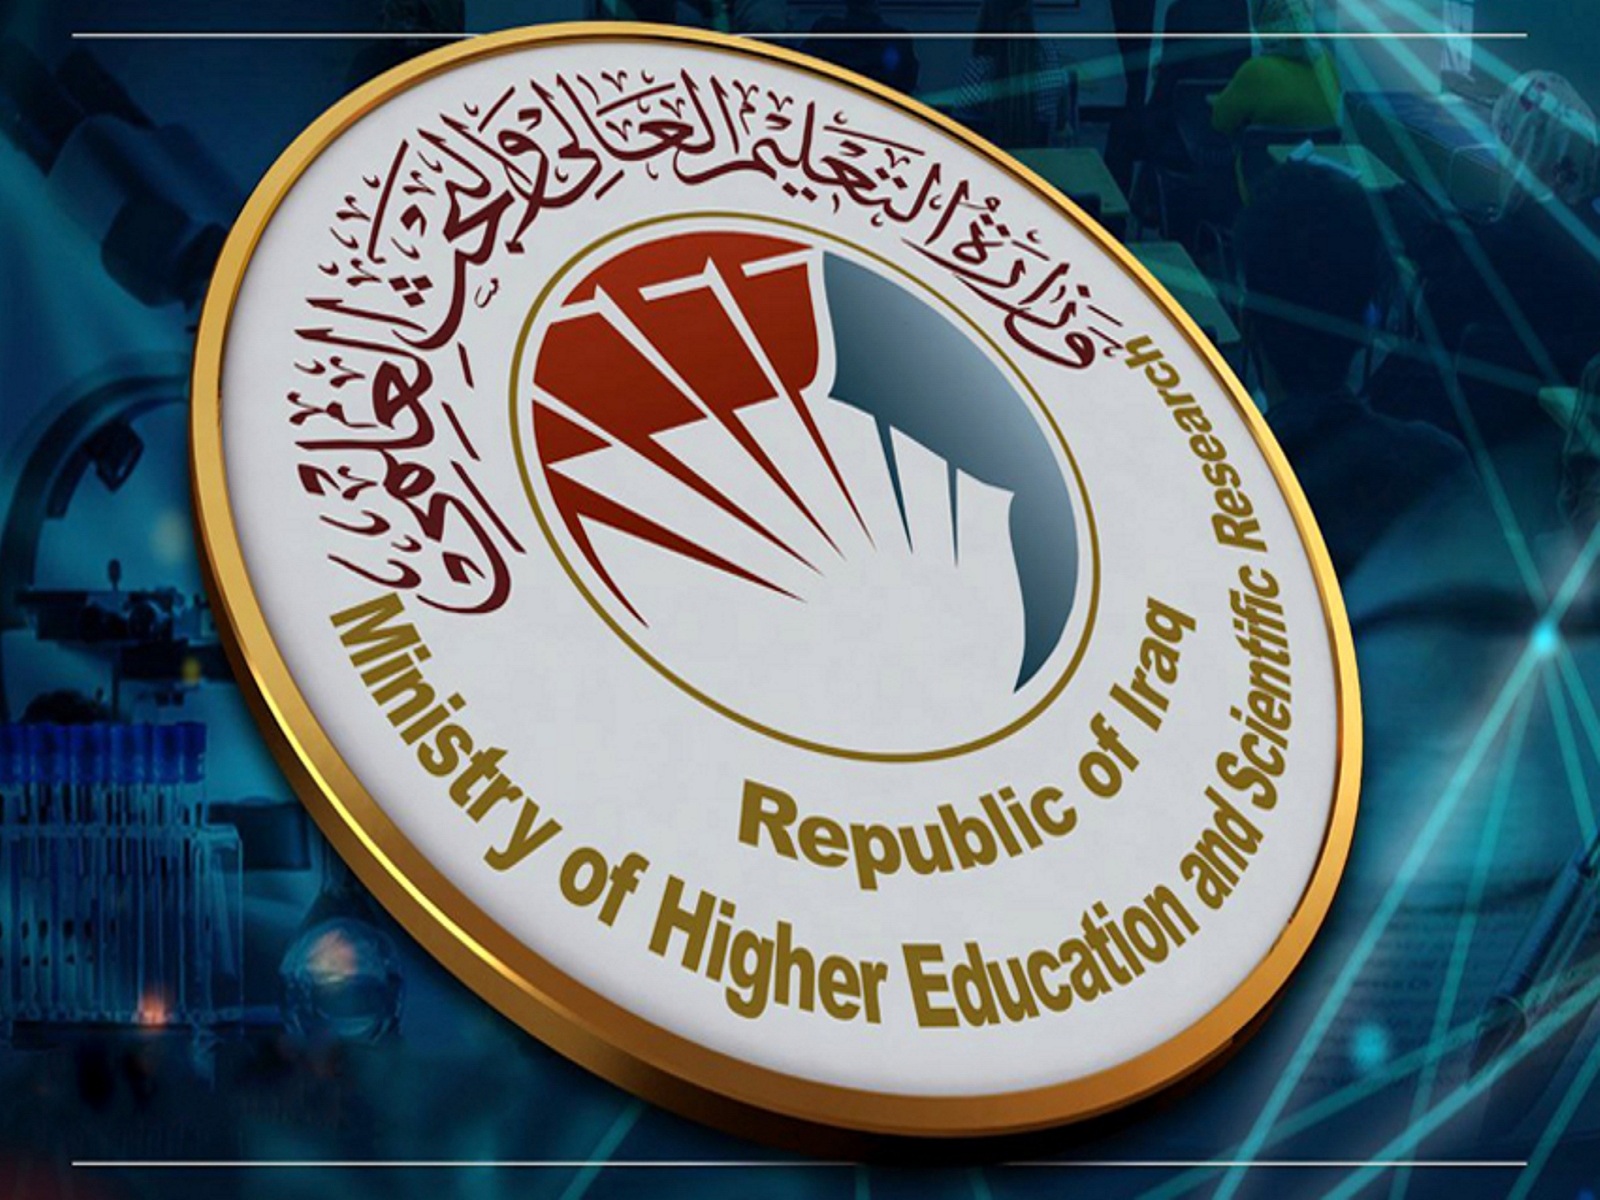 معدلات القبول في الجامعات العراقية 2022